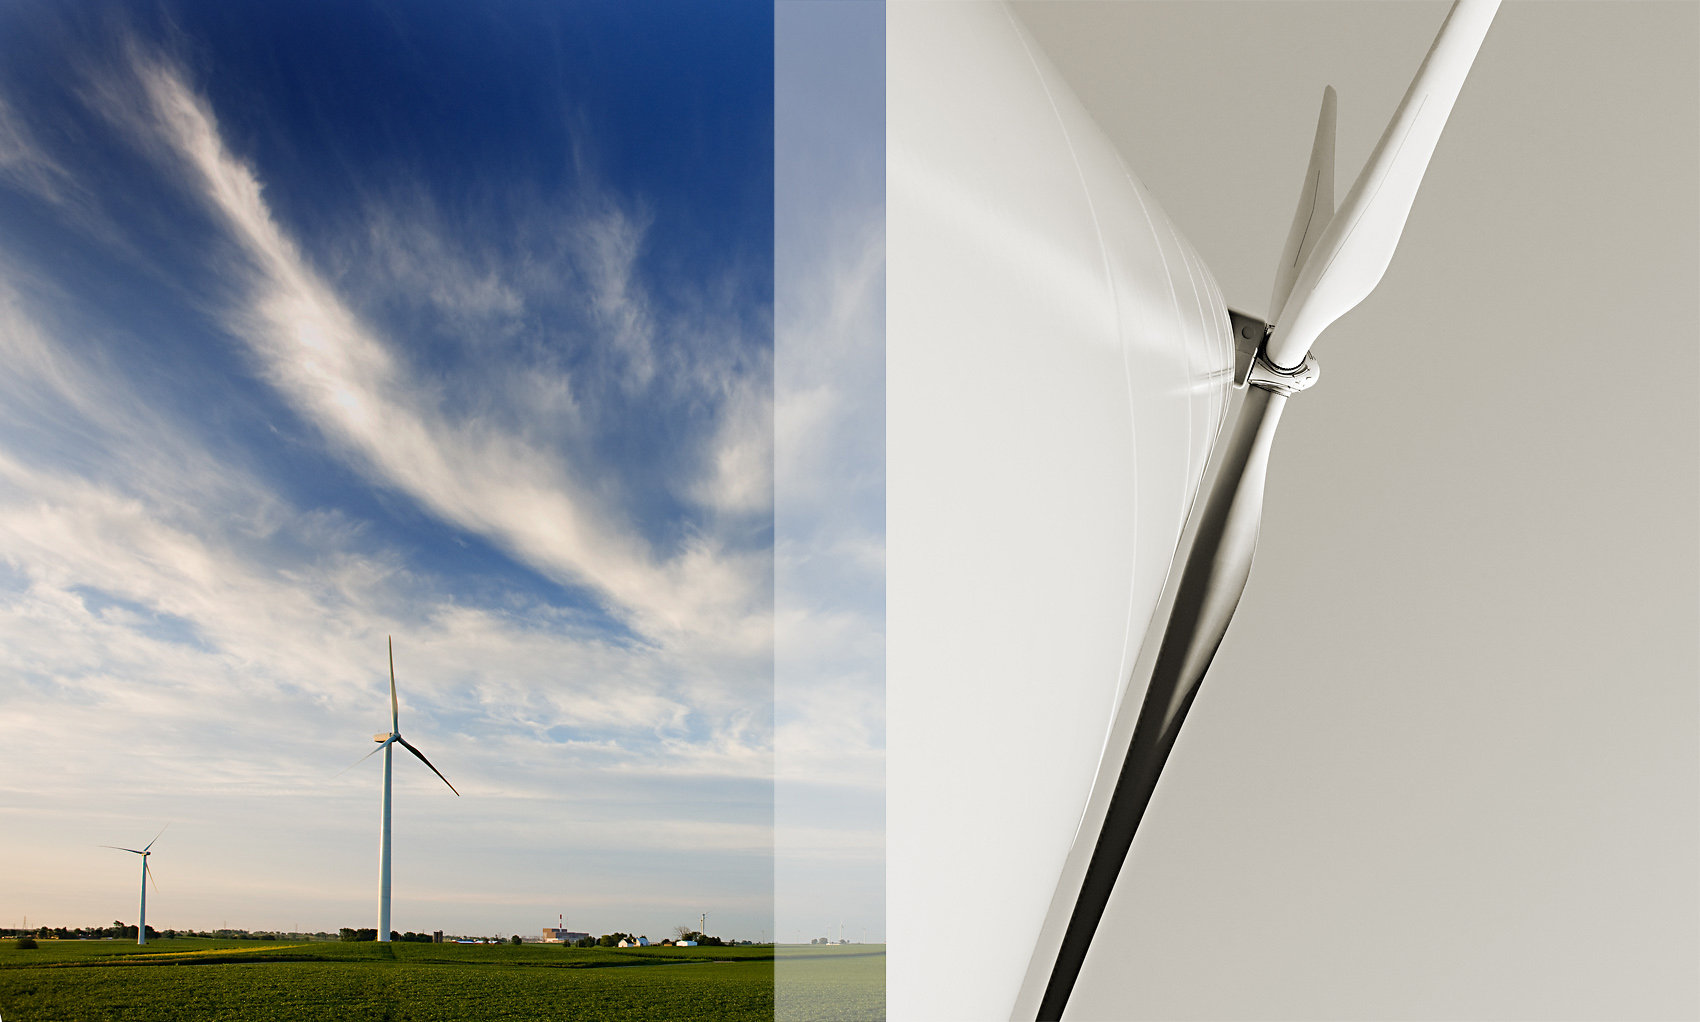 Wind farm turbine details in Minnesota.